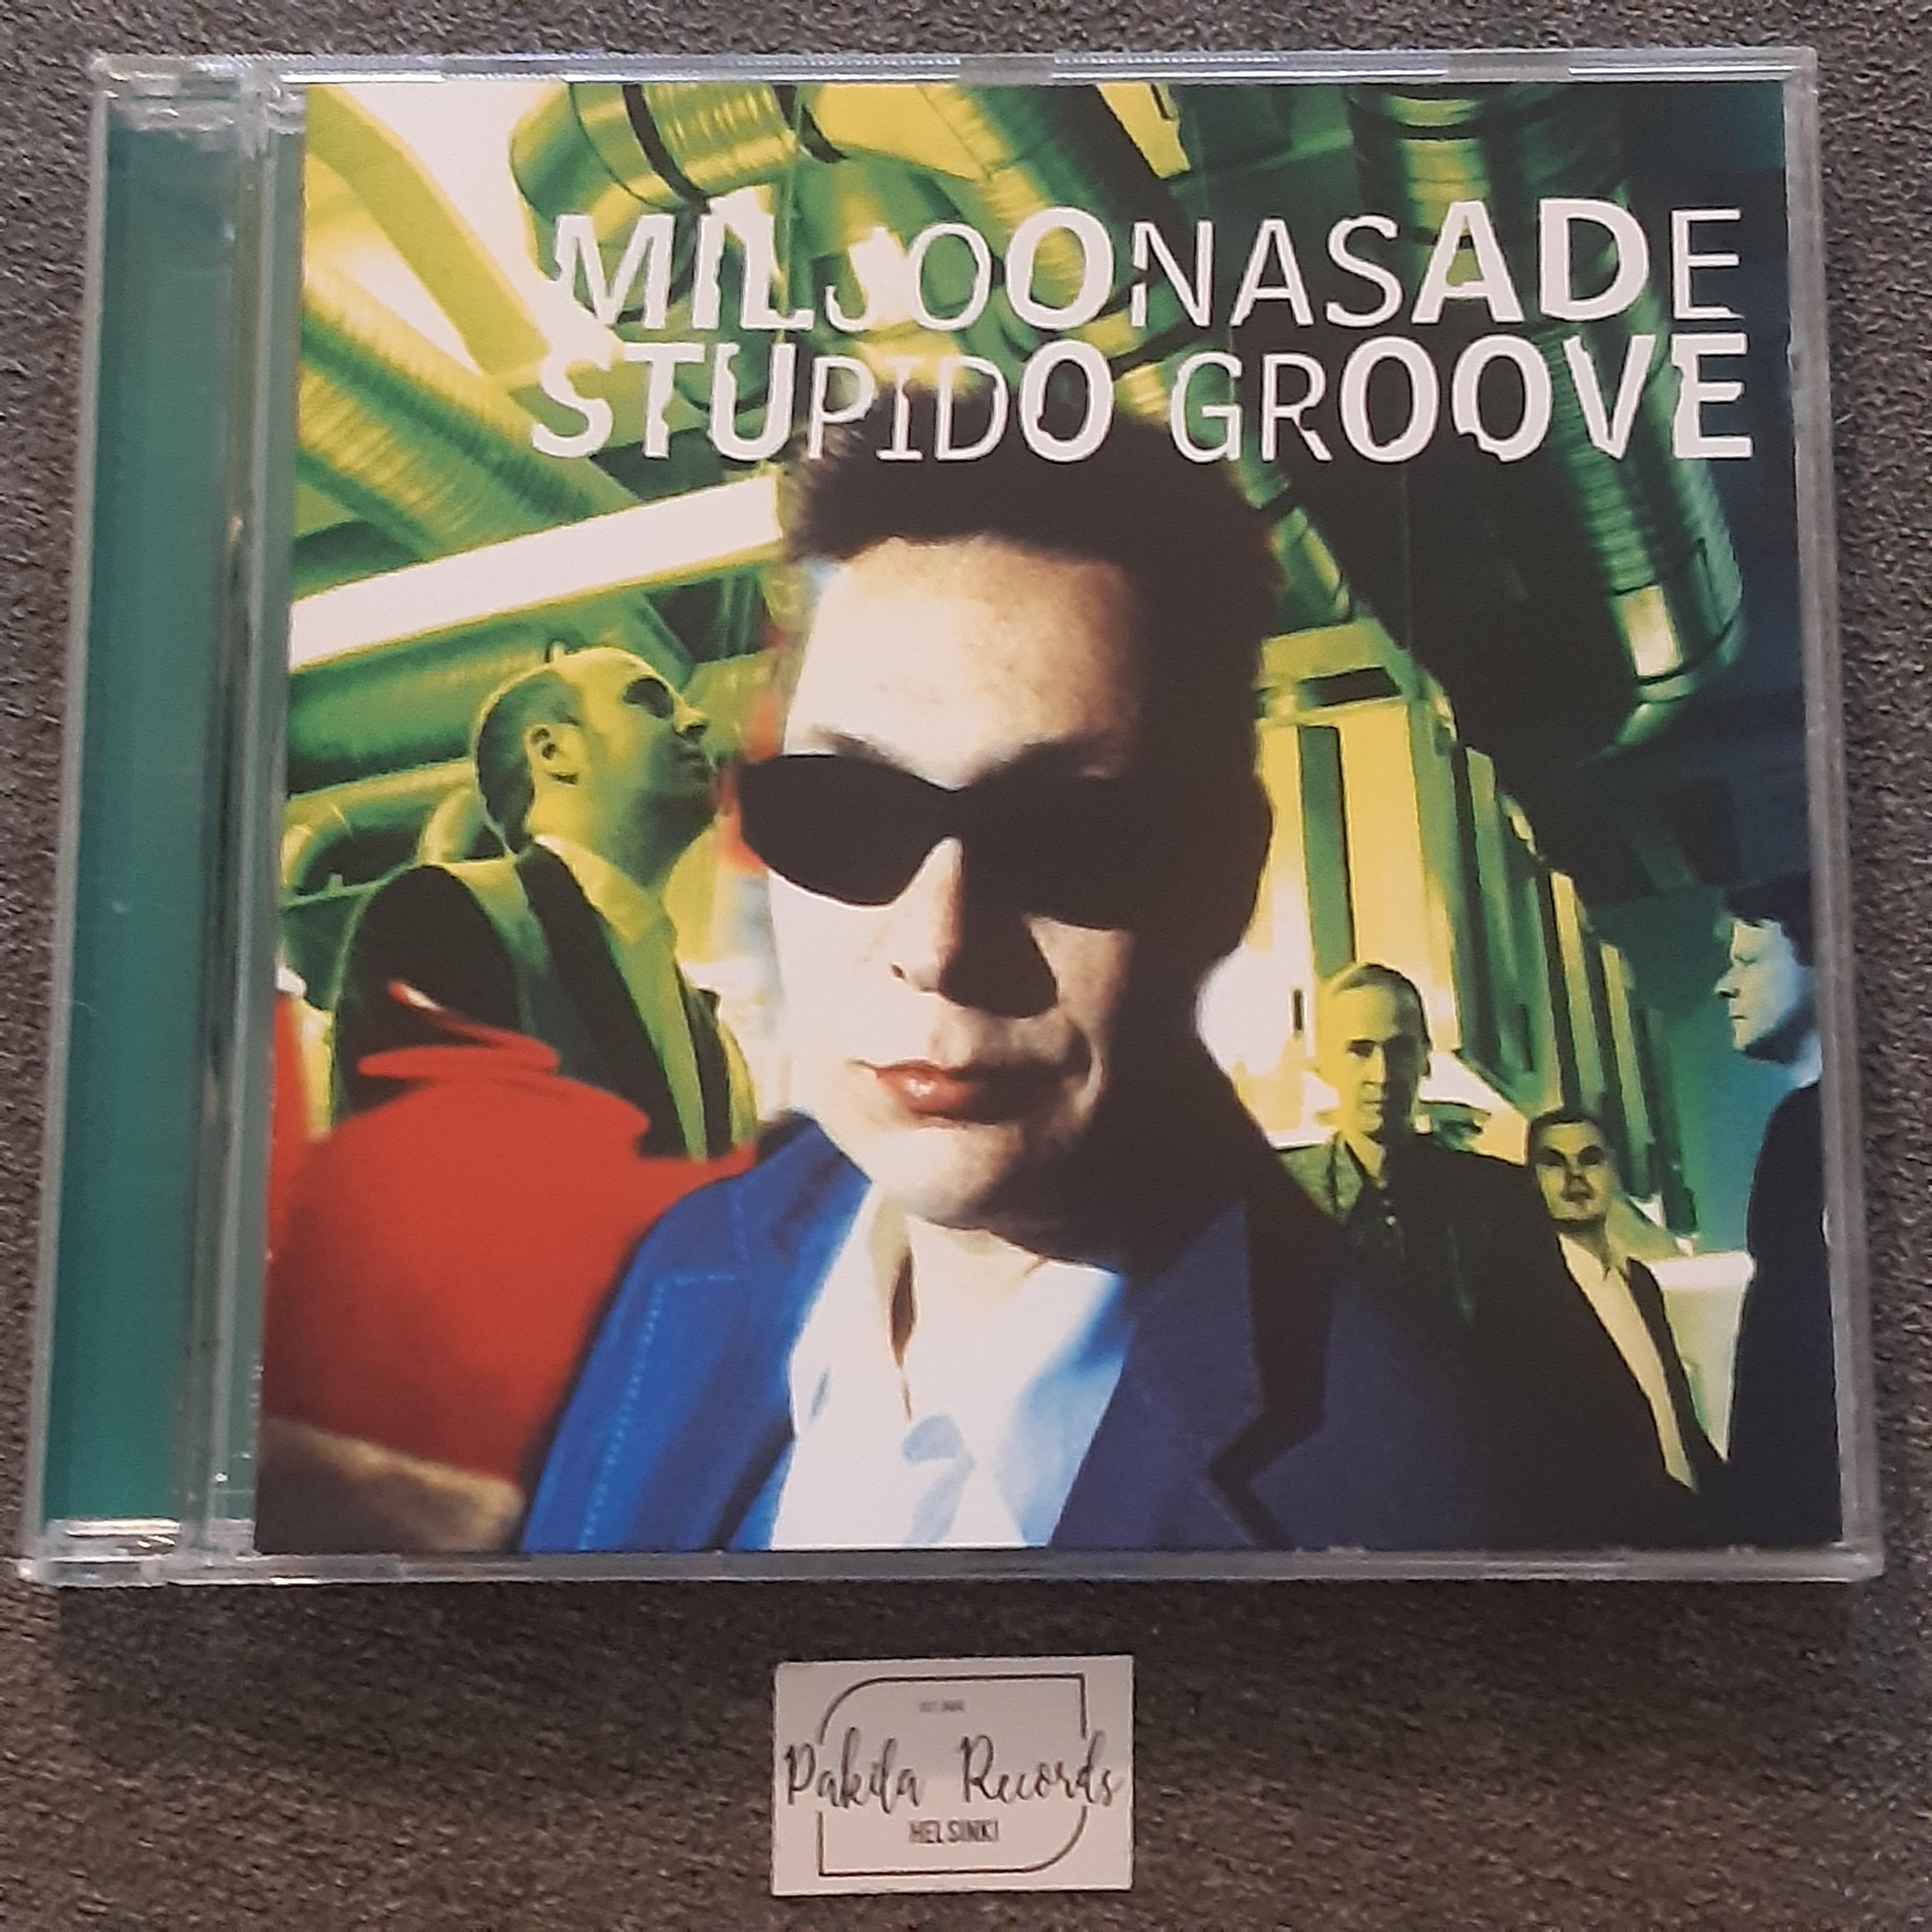 Miljoonasade - Stupido Groove - CD (käytetty)